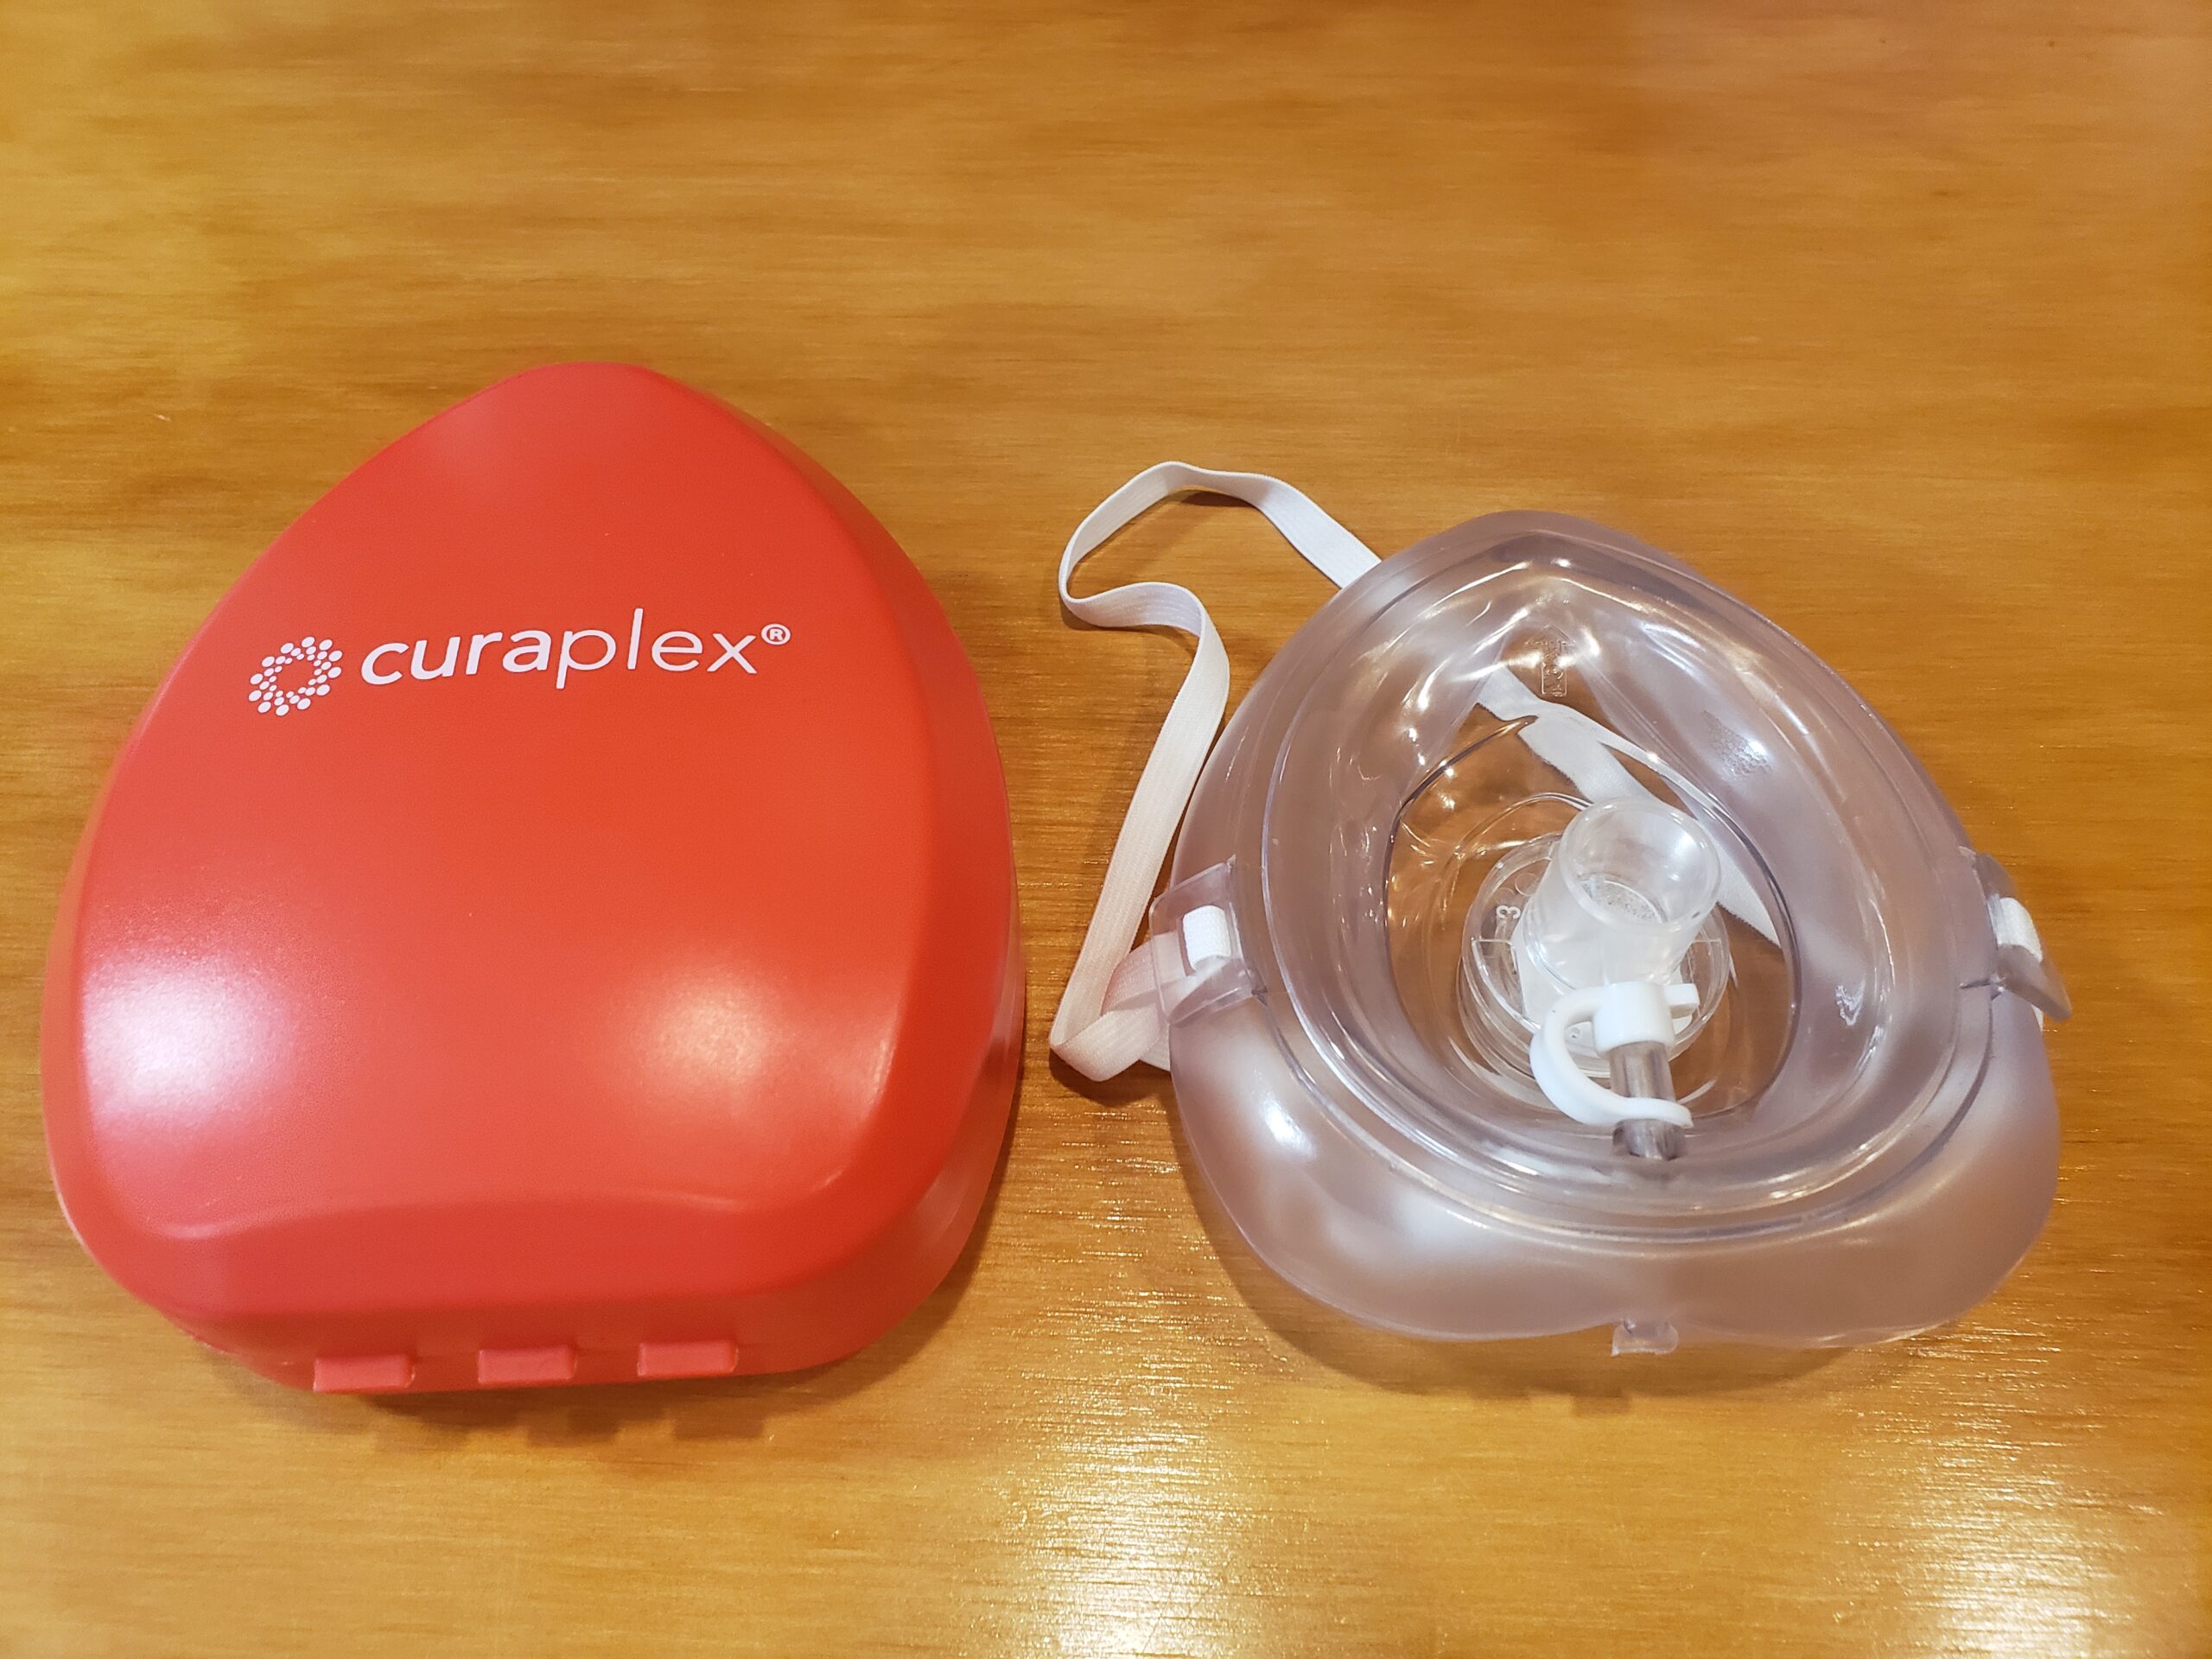 Curaplex CPR Pocket Mask